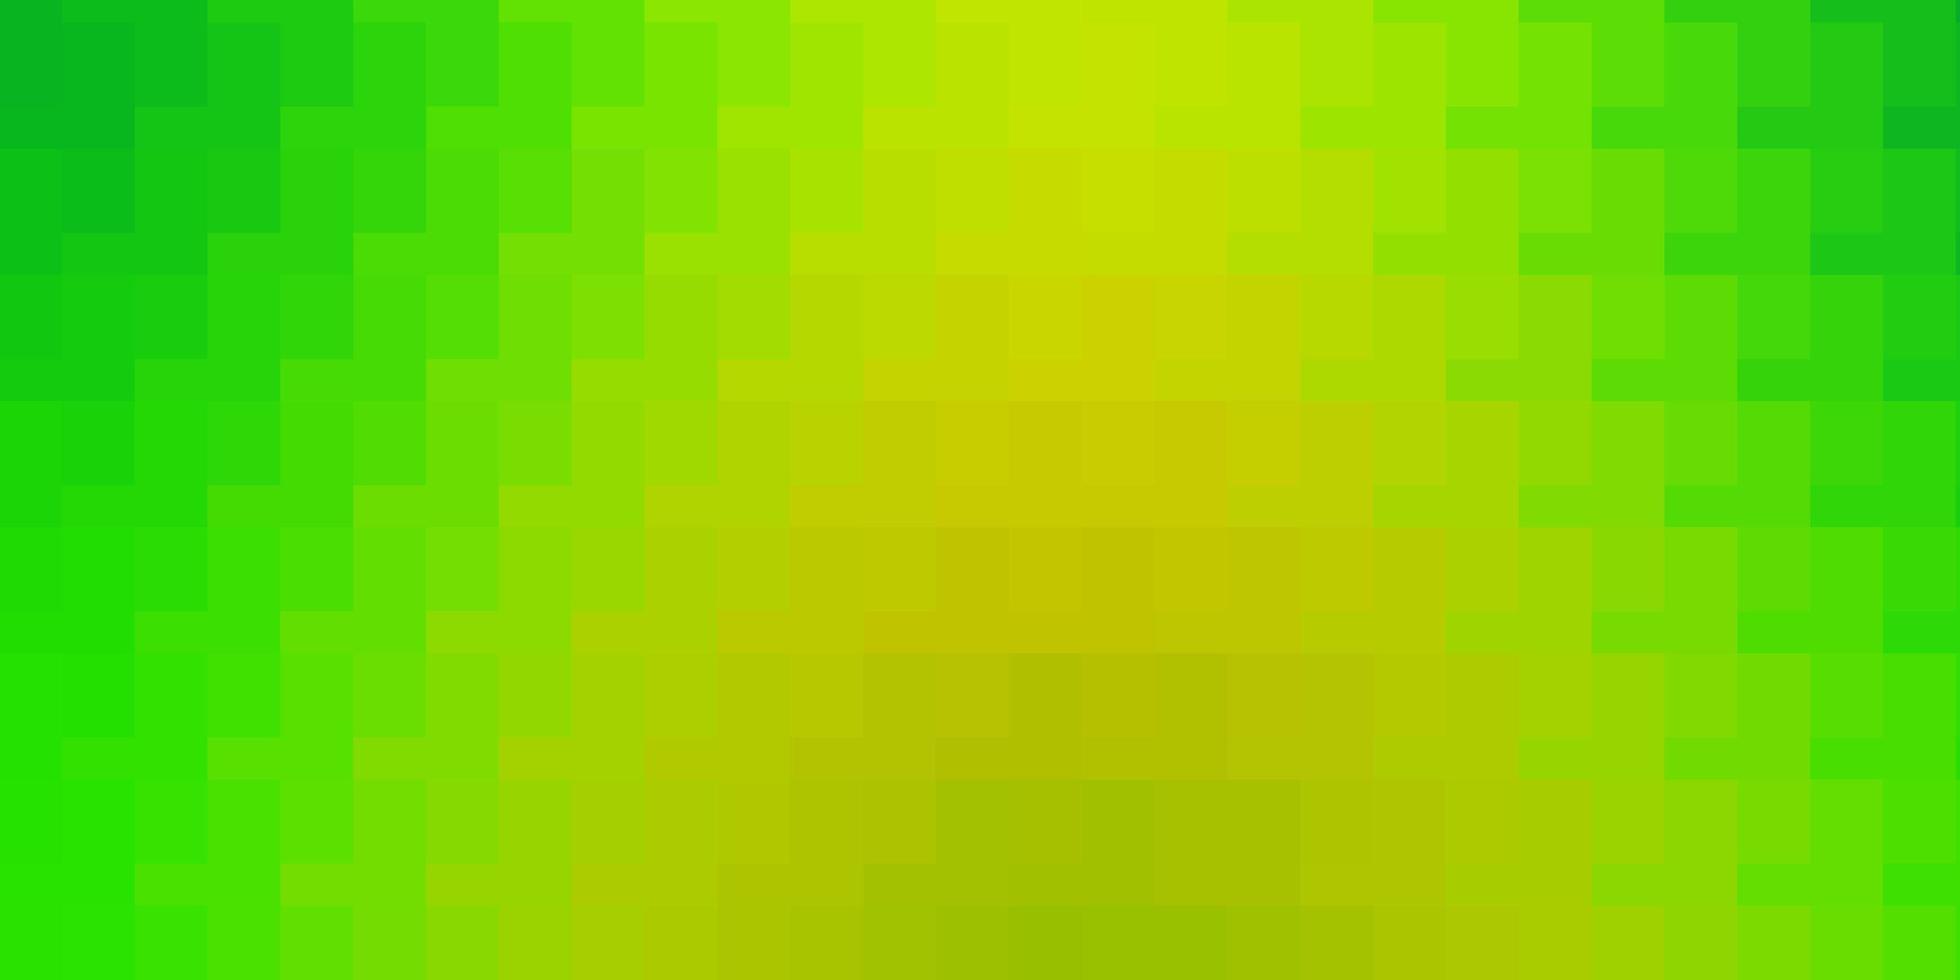 textura de vetor amarelo verde claro em estilo retangular design moderno com retângulos em padrão de estilo abstrato para folhetos de livretos de negócios